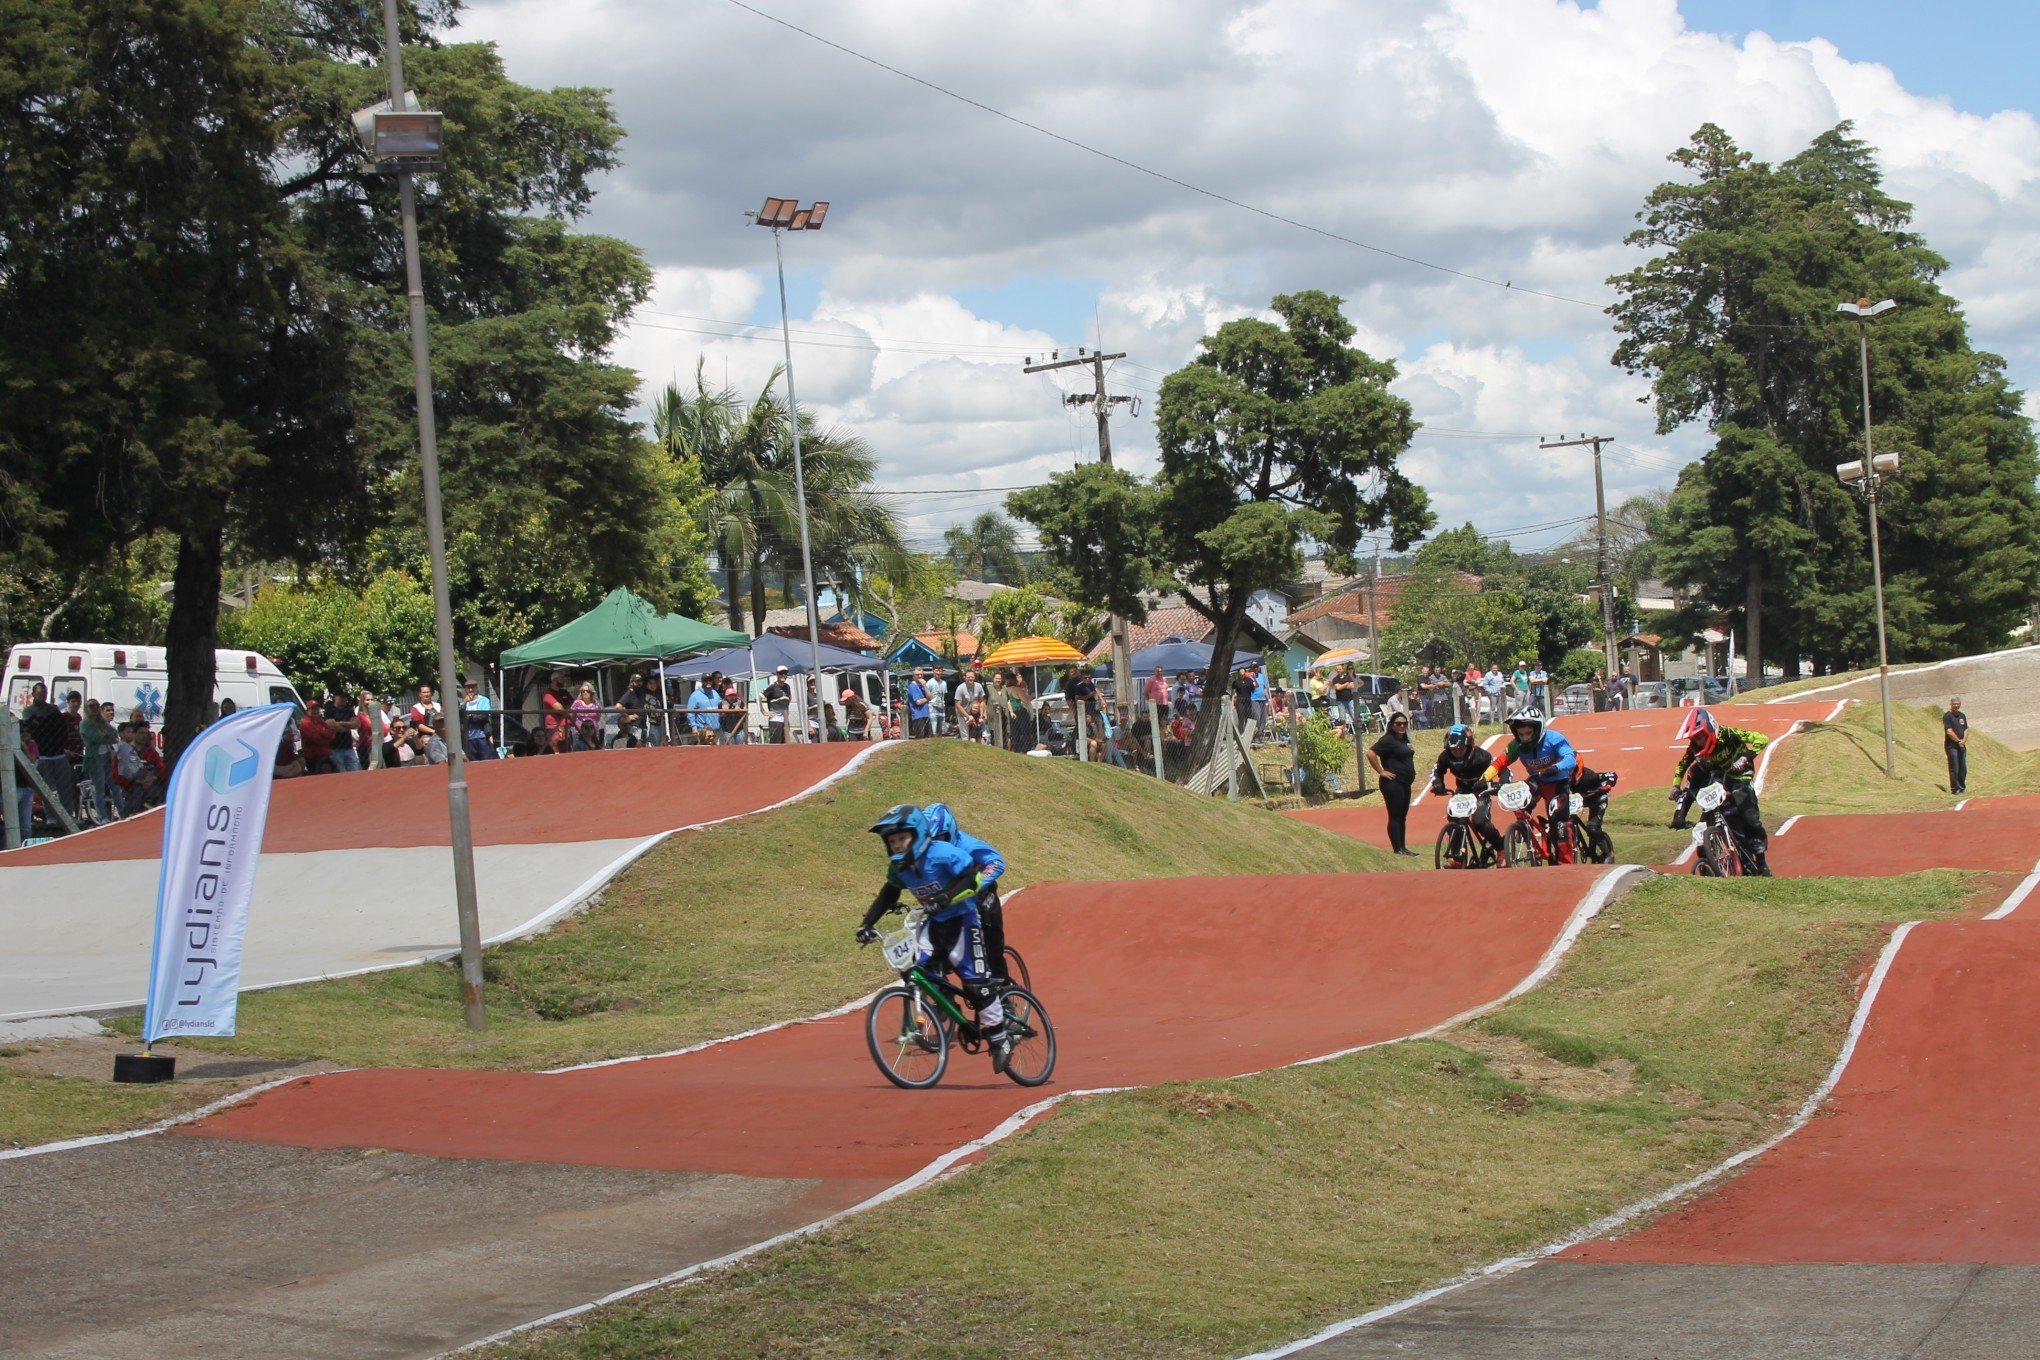 Ivoti recebe mais de 80 atletas em campeonato de bicicross - Esportes -  Diário de Canoas